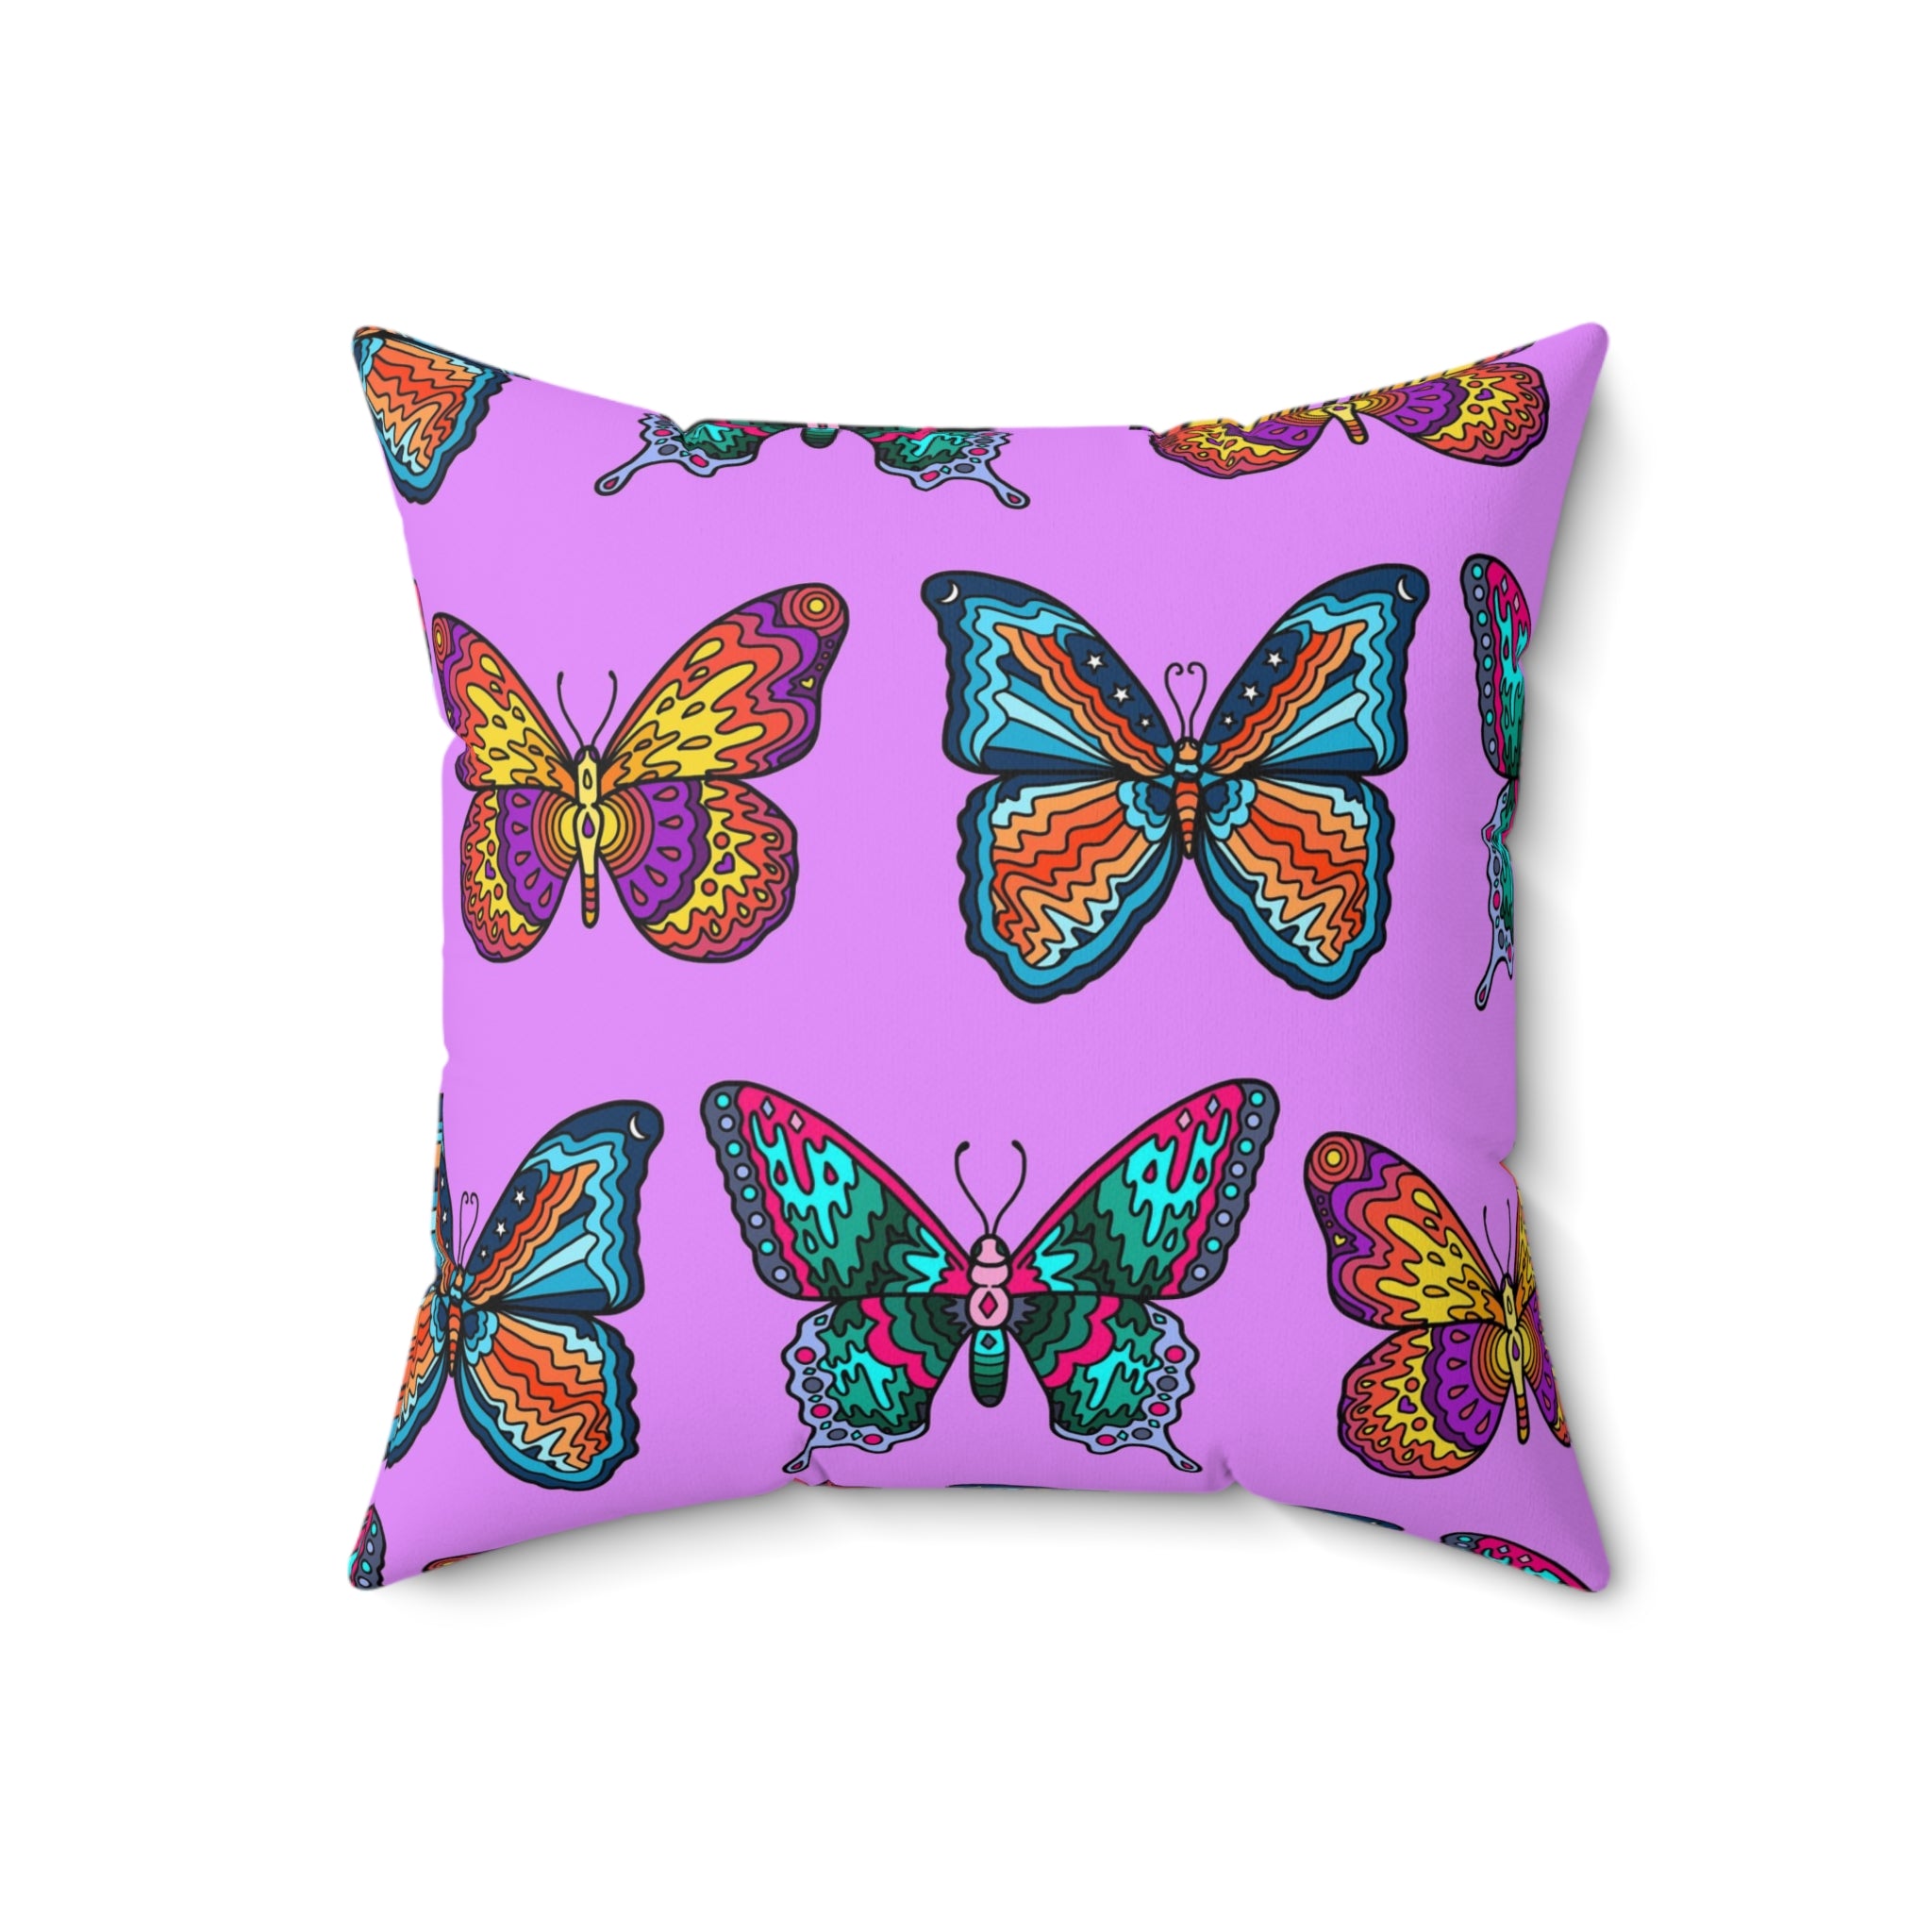 Mosaic Butterflies Throw Pillow